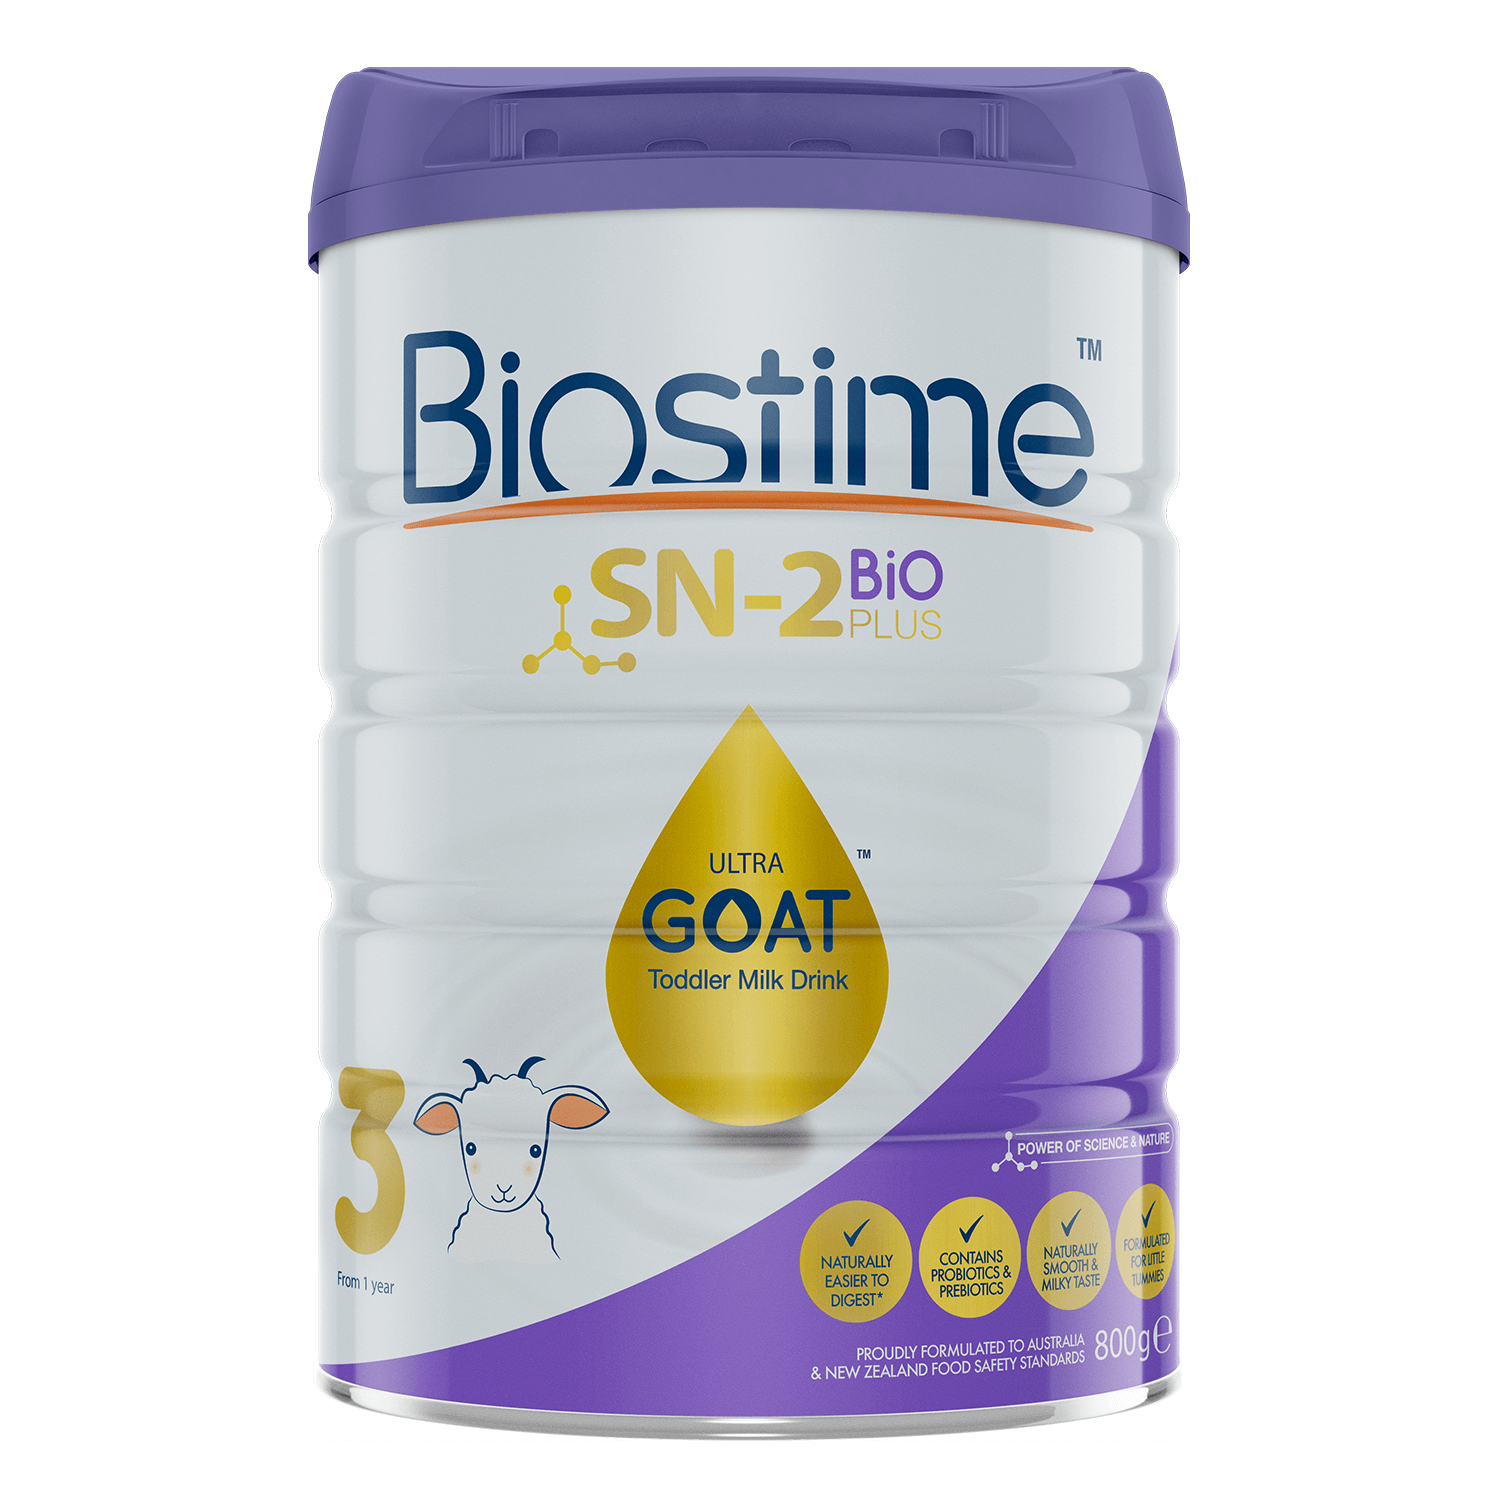 Sữa dinh dưỡng công thức Biostime SN-2 Bio Plus Utral Goat số 03 800g 1-3